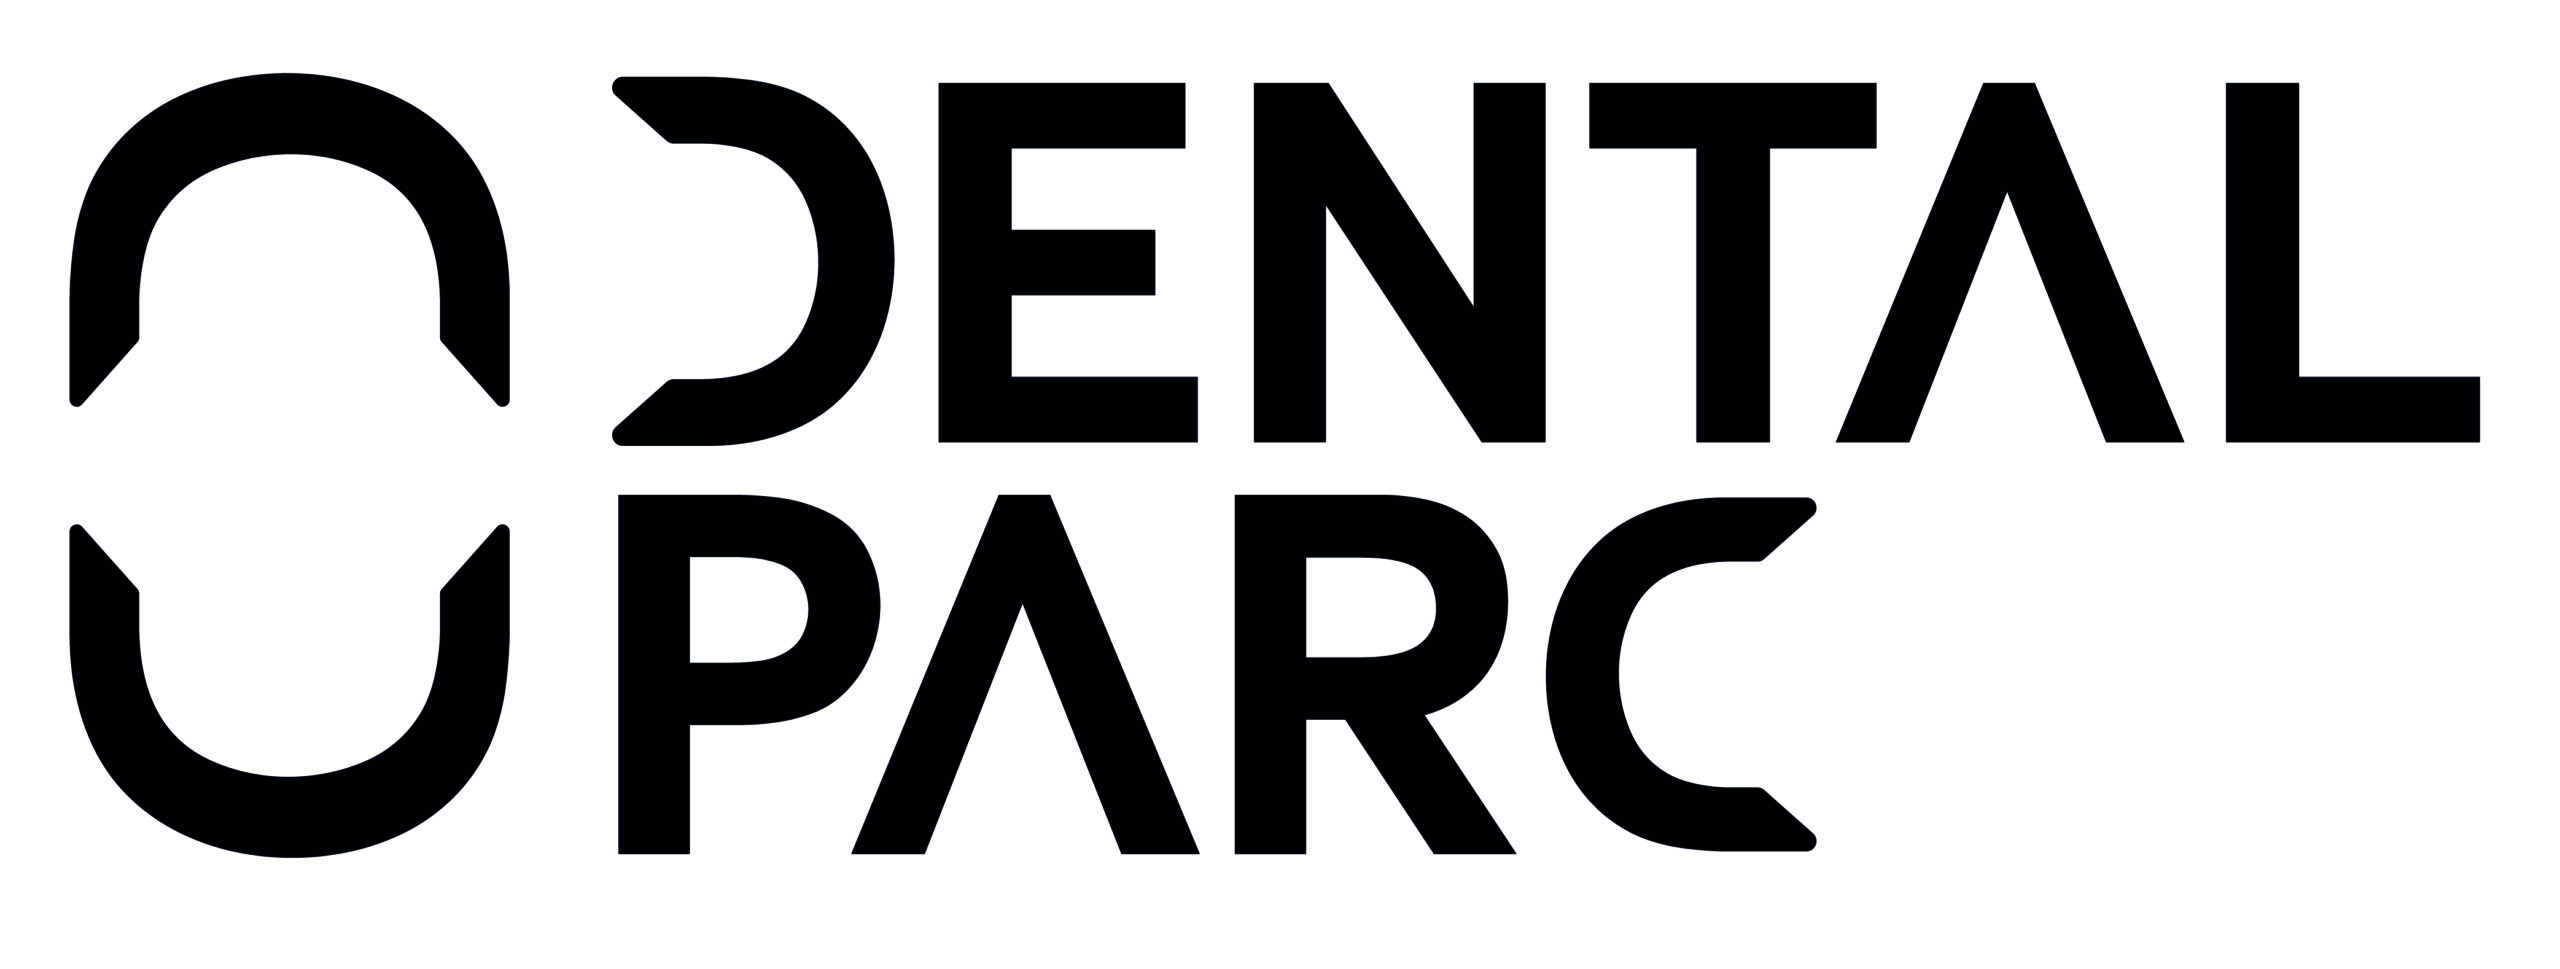 Création logo contemporain chirurgien dentiste